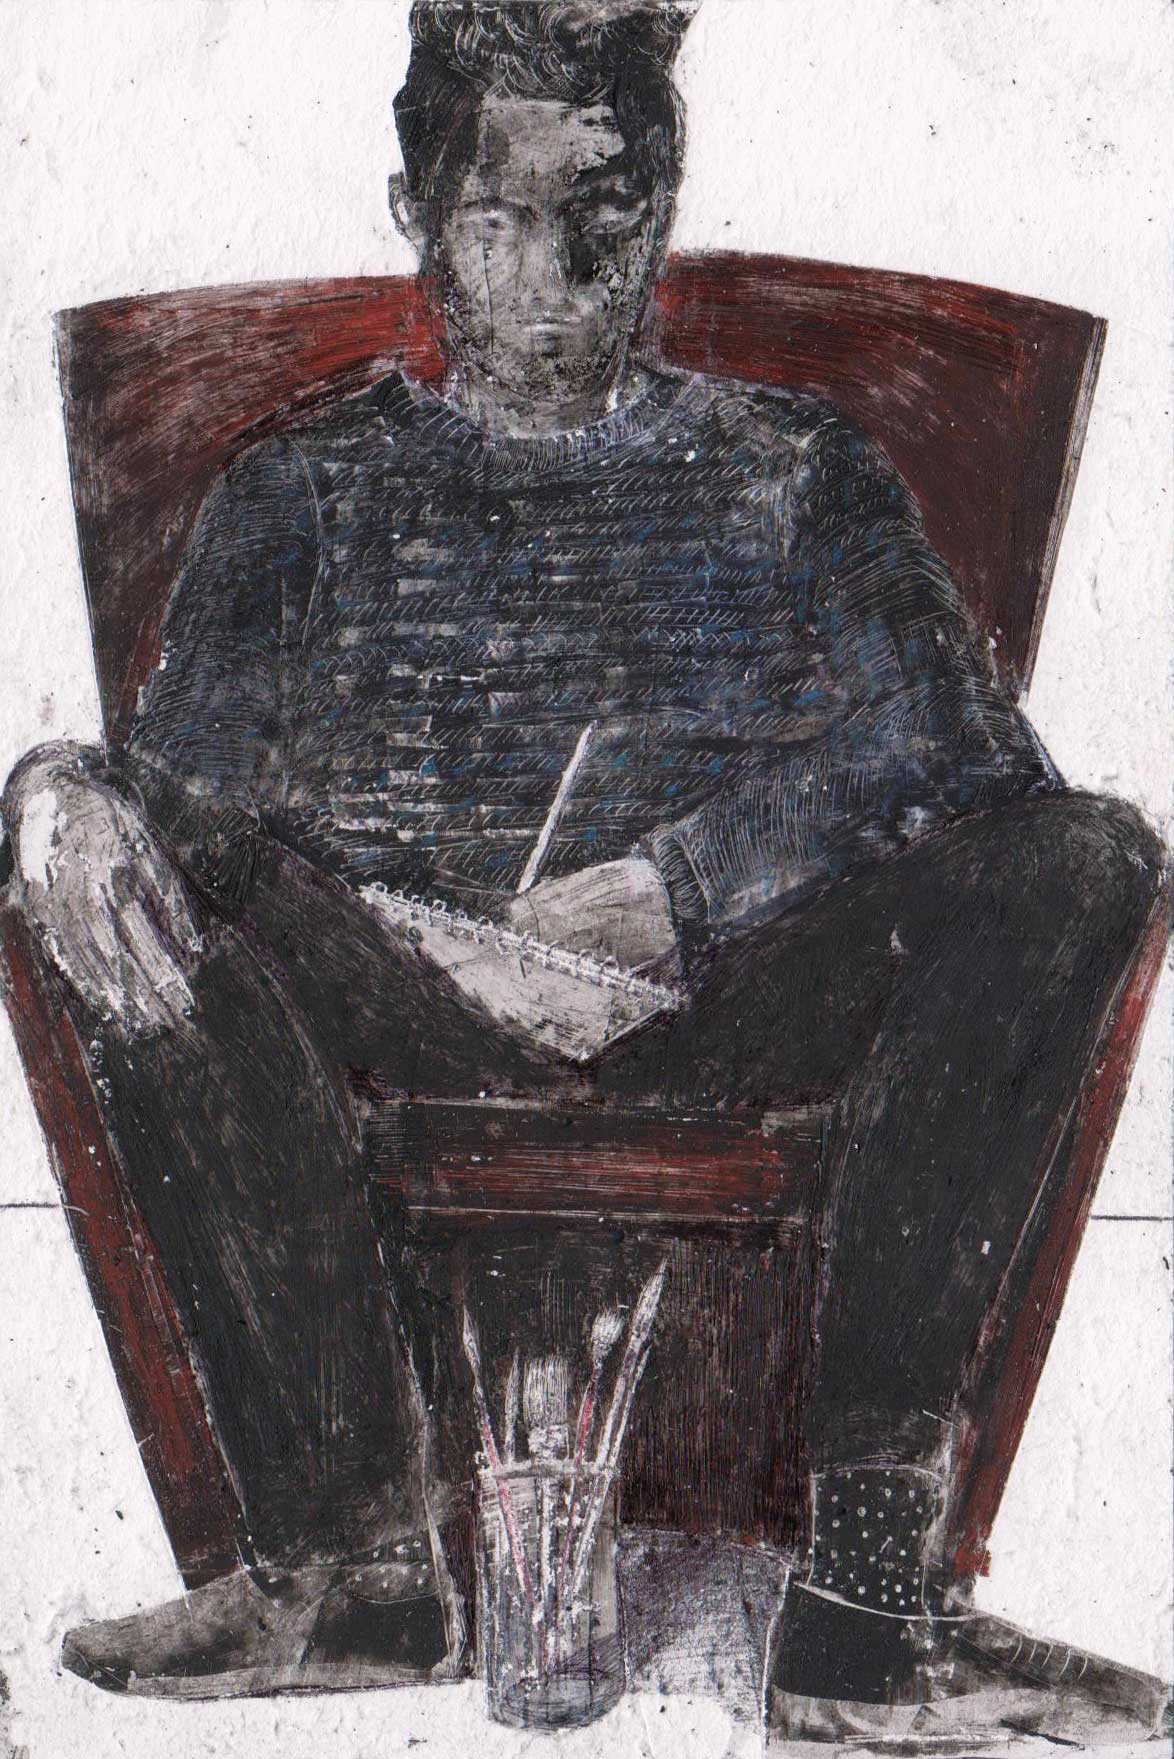 Stefano disegna, tecnica mista su carta, cm 15x10 (2015) - Debora Piccinini Artista